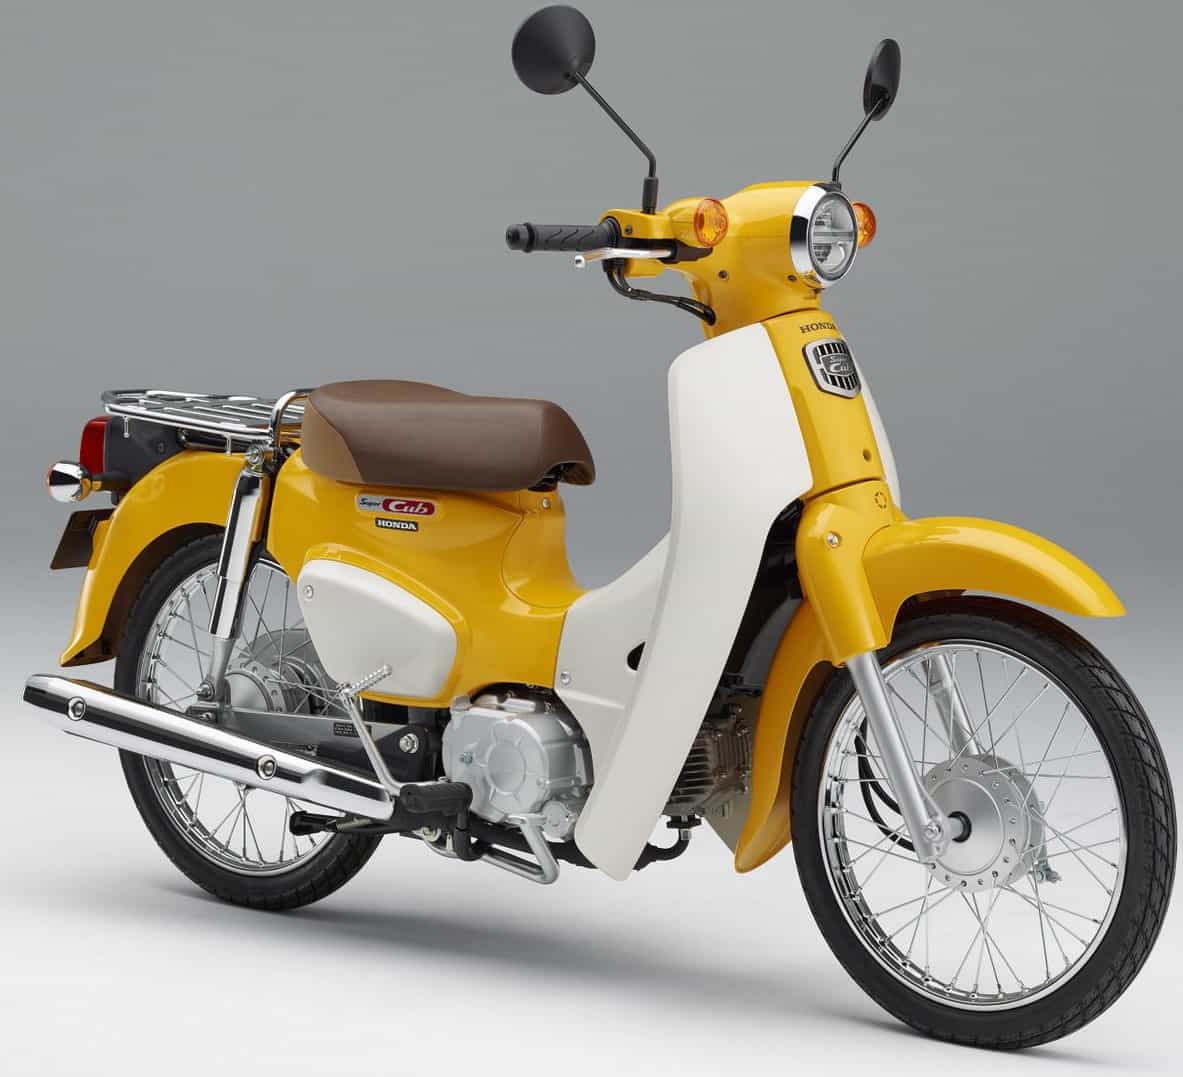 Ktm Design classique 110cc Cub110-2 Moto (TM) - Chine Moto, Moto